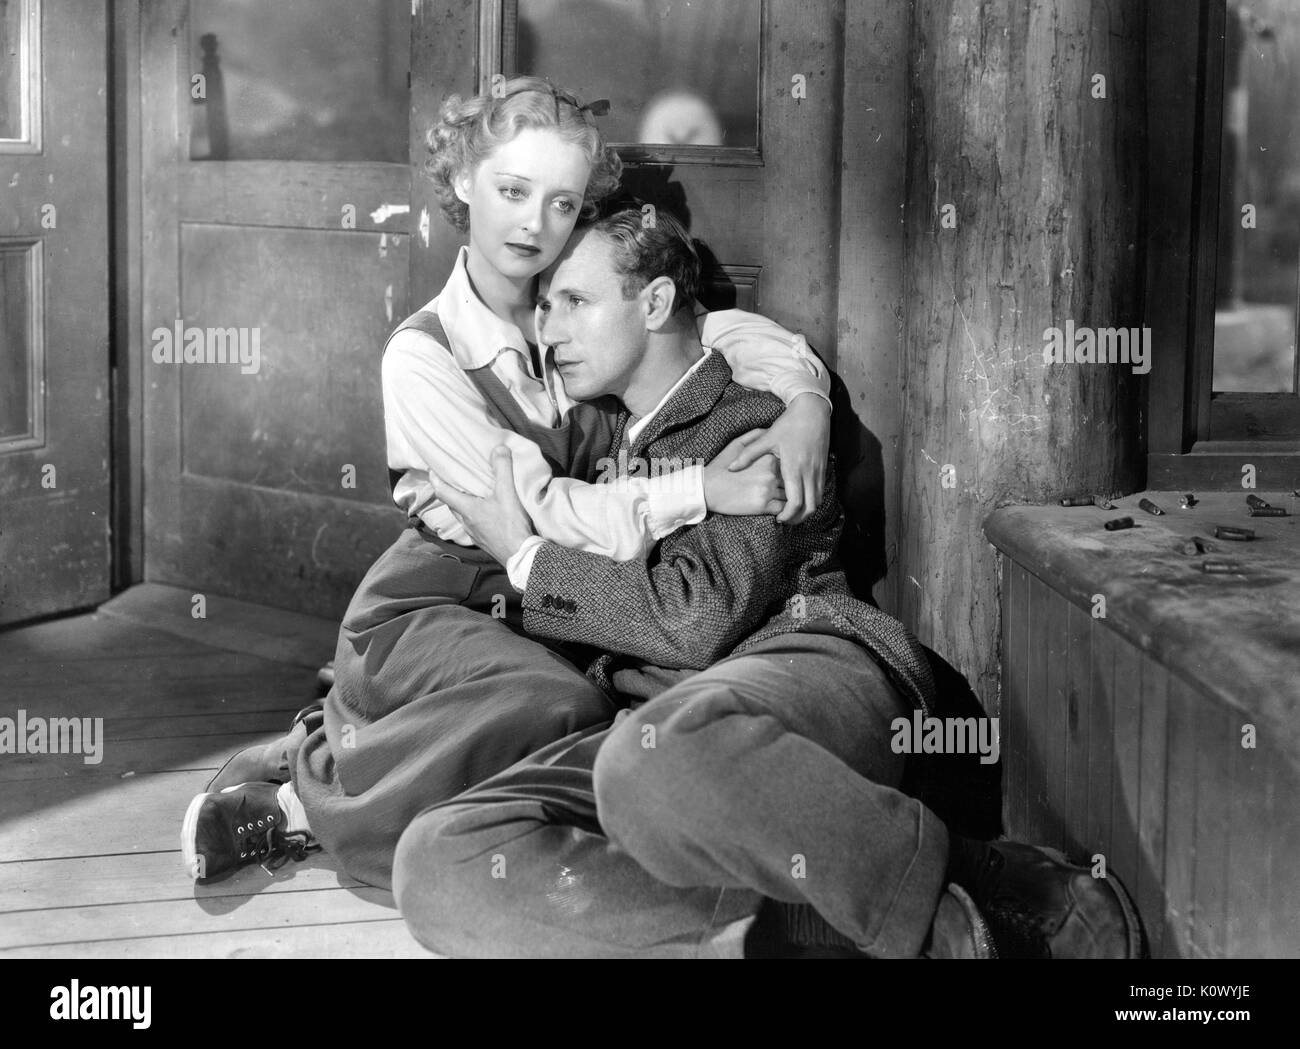 Bette Davis maintenant un homme, allongé sur le sol d'une chambre, dans un film encore, 1949. Crédit photo Smith Collection/Gado/Getty Images. Banque D'Images